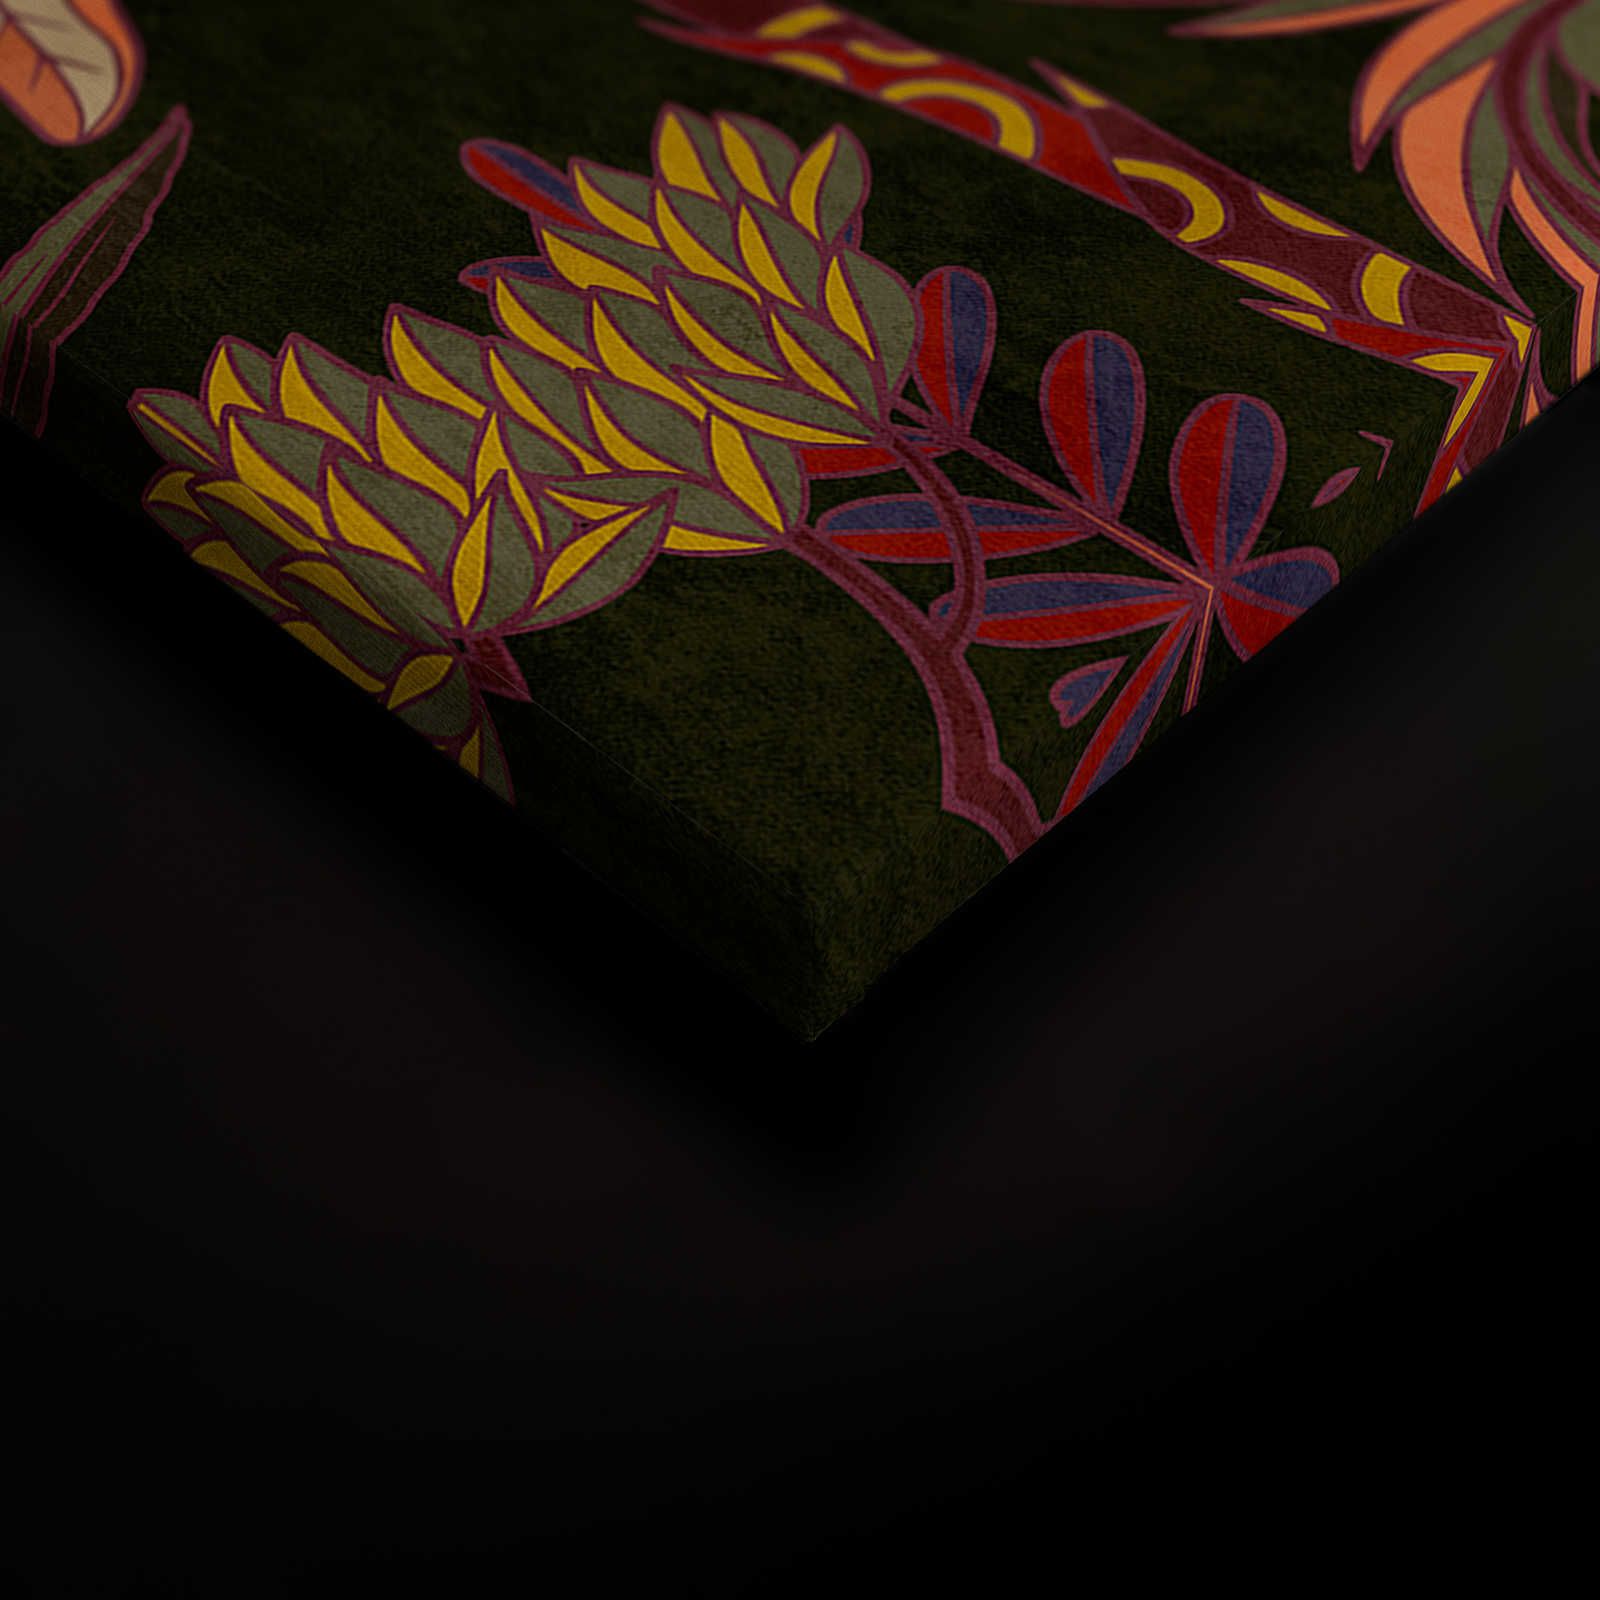             Lagos 1 - Cuadro lienzo palmeras estilo gráfico colorido en aspecto textil - 0,90 m x 0,60 m
        